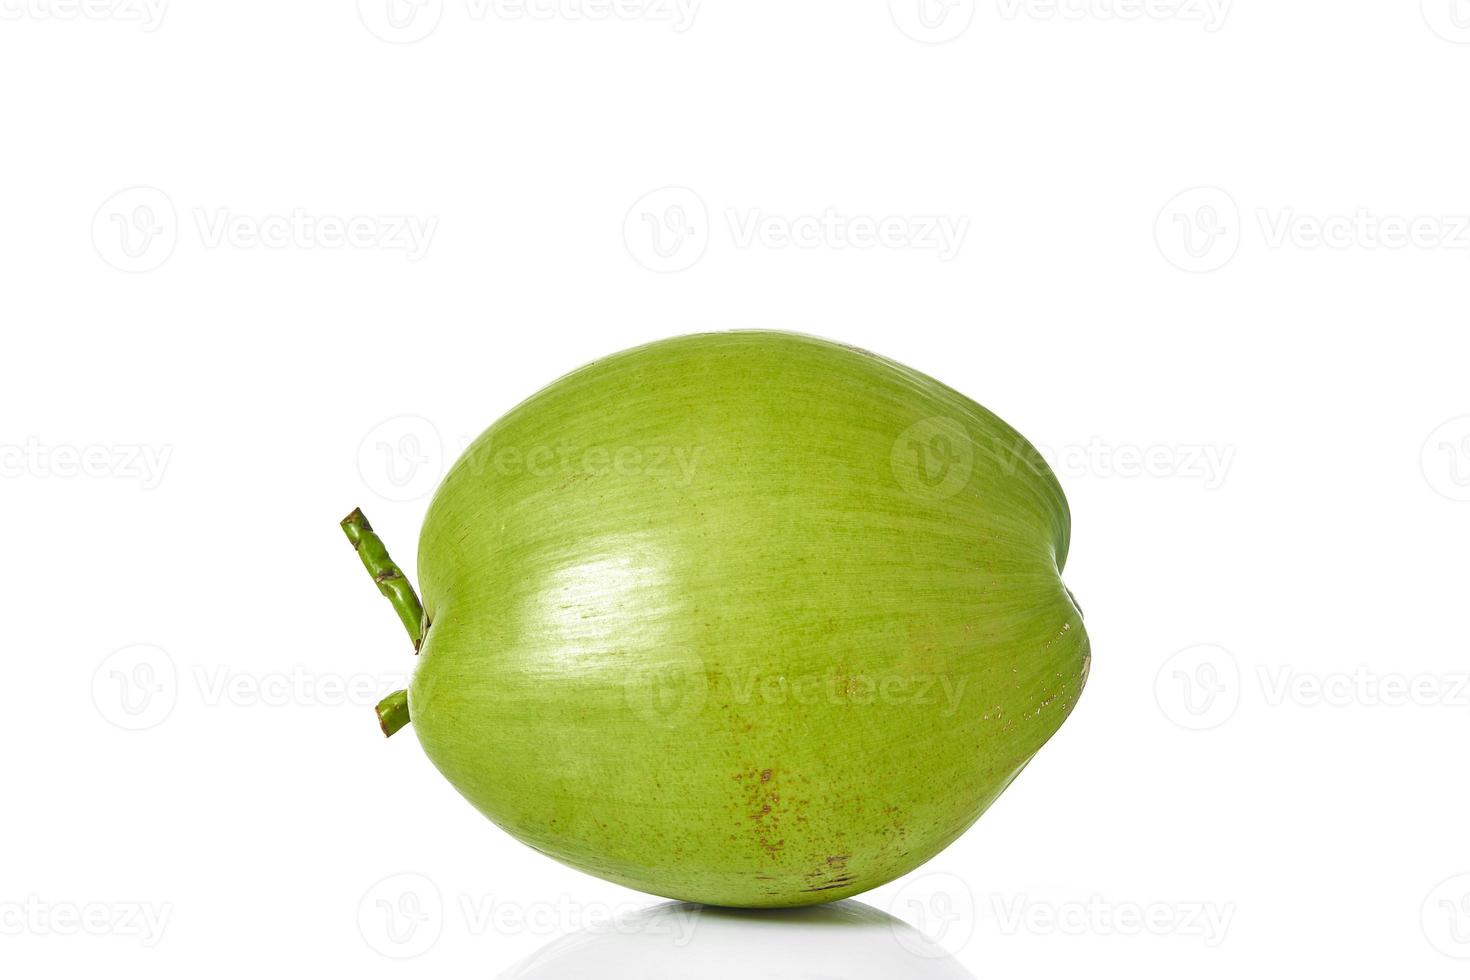 Jeune noix de coco verte sur fond blanc photo